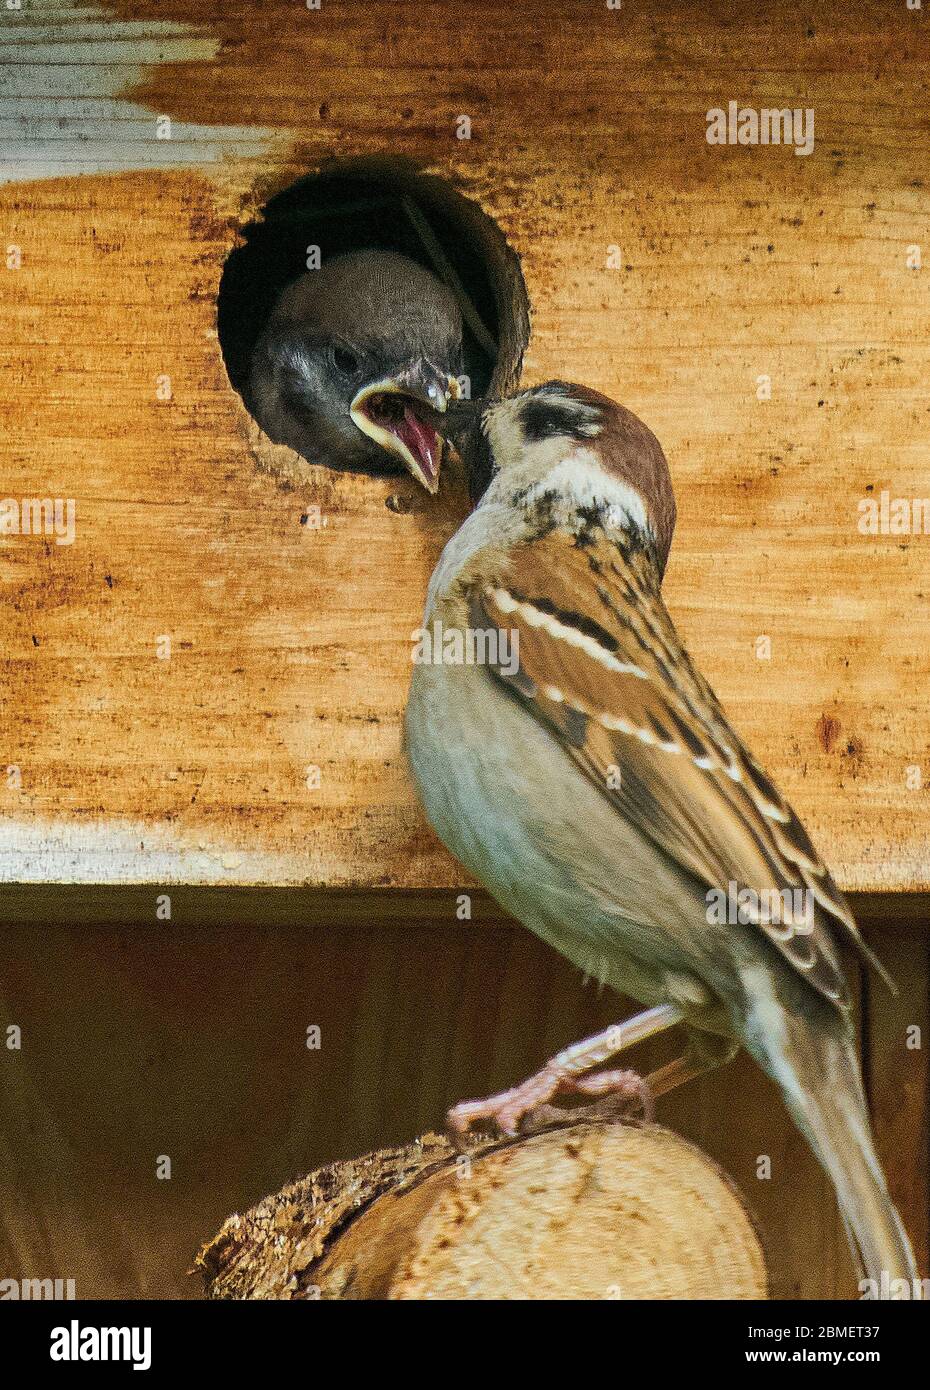 Marktoberdorf, Allemagne, 9 mai 2020. Sparrow alimente sa progéniture dans l'incubateur. Photographe: Peter Schatz Banque D'Images